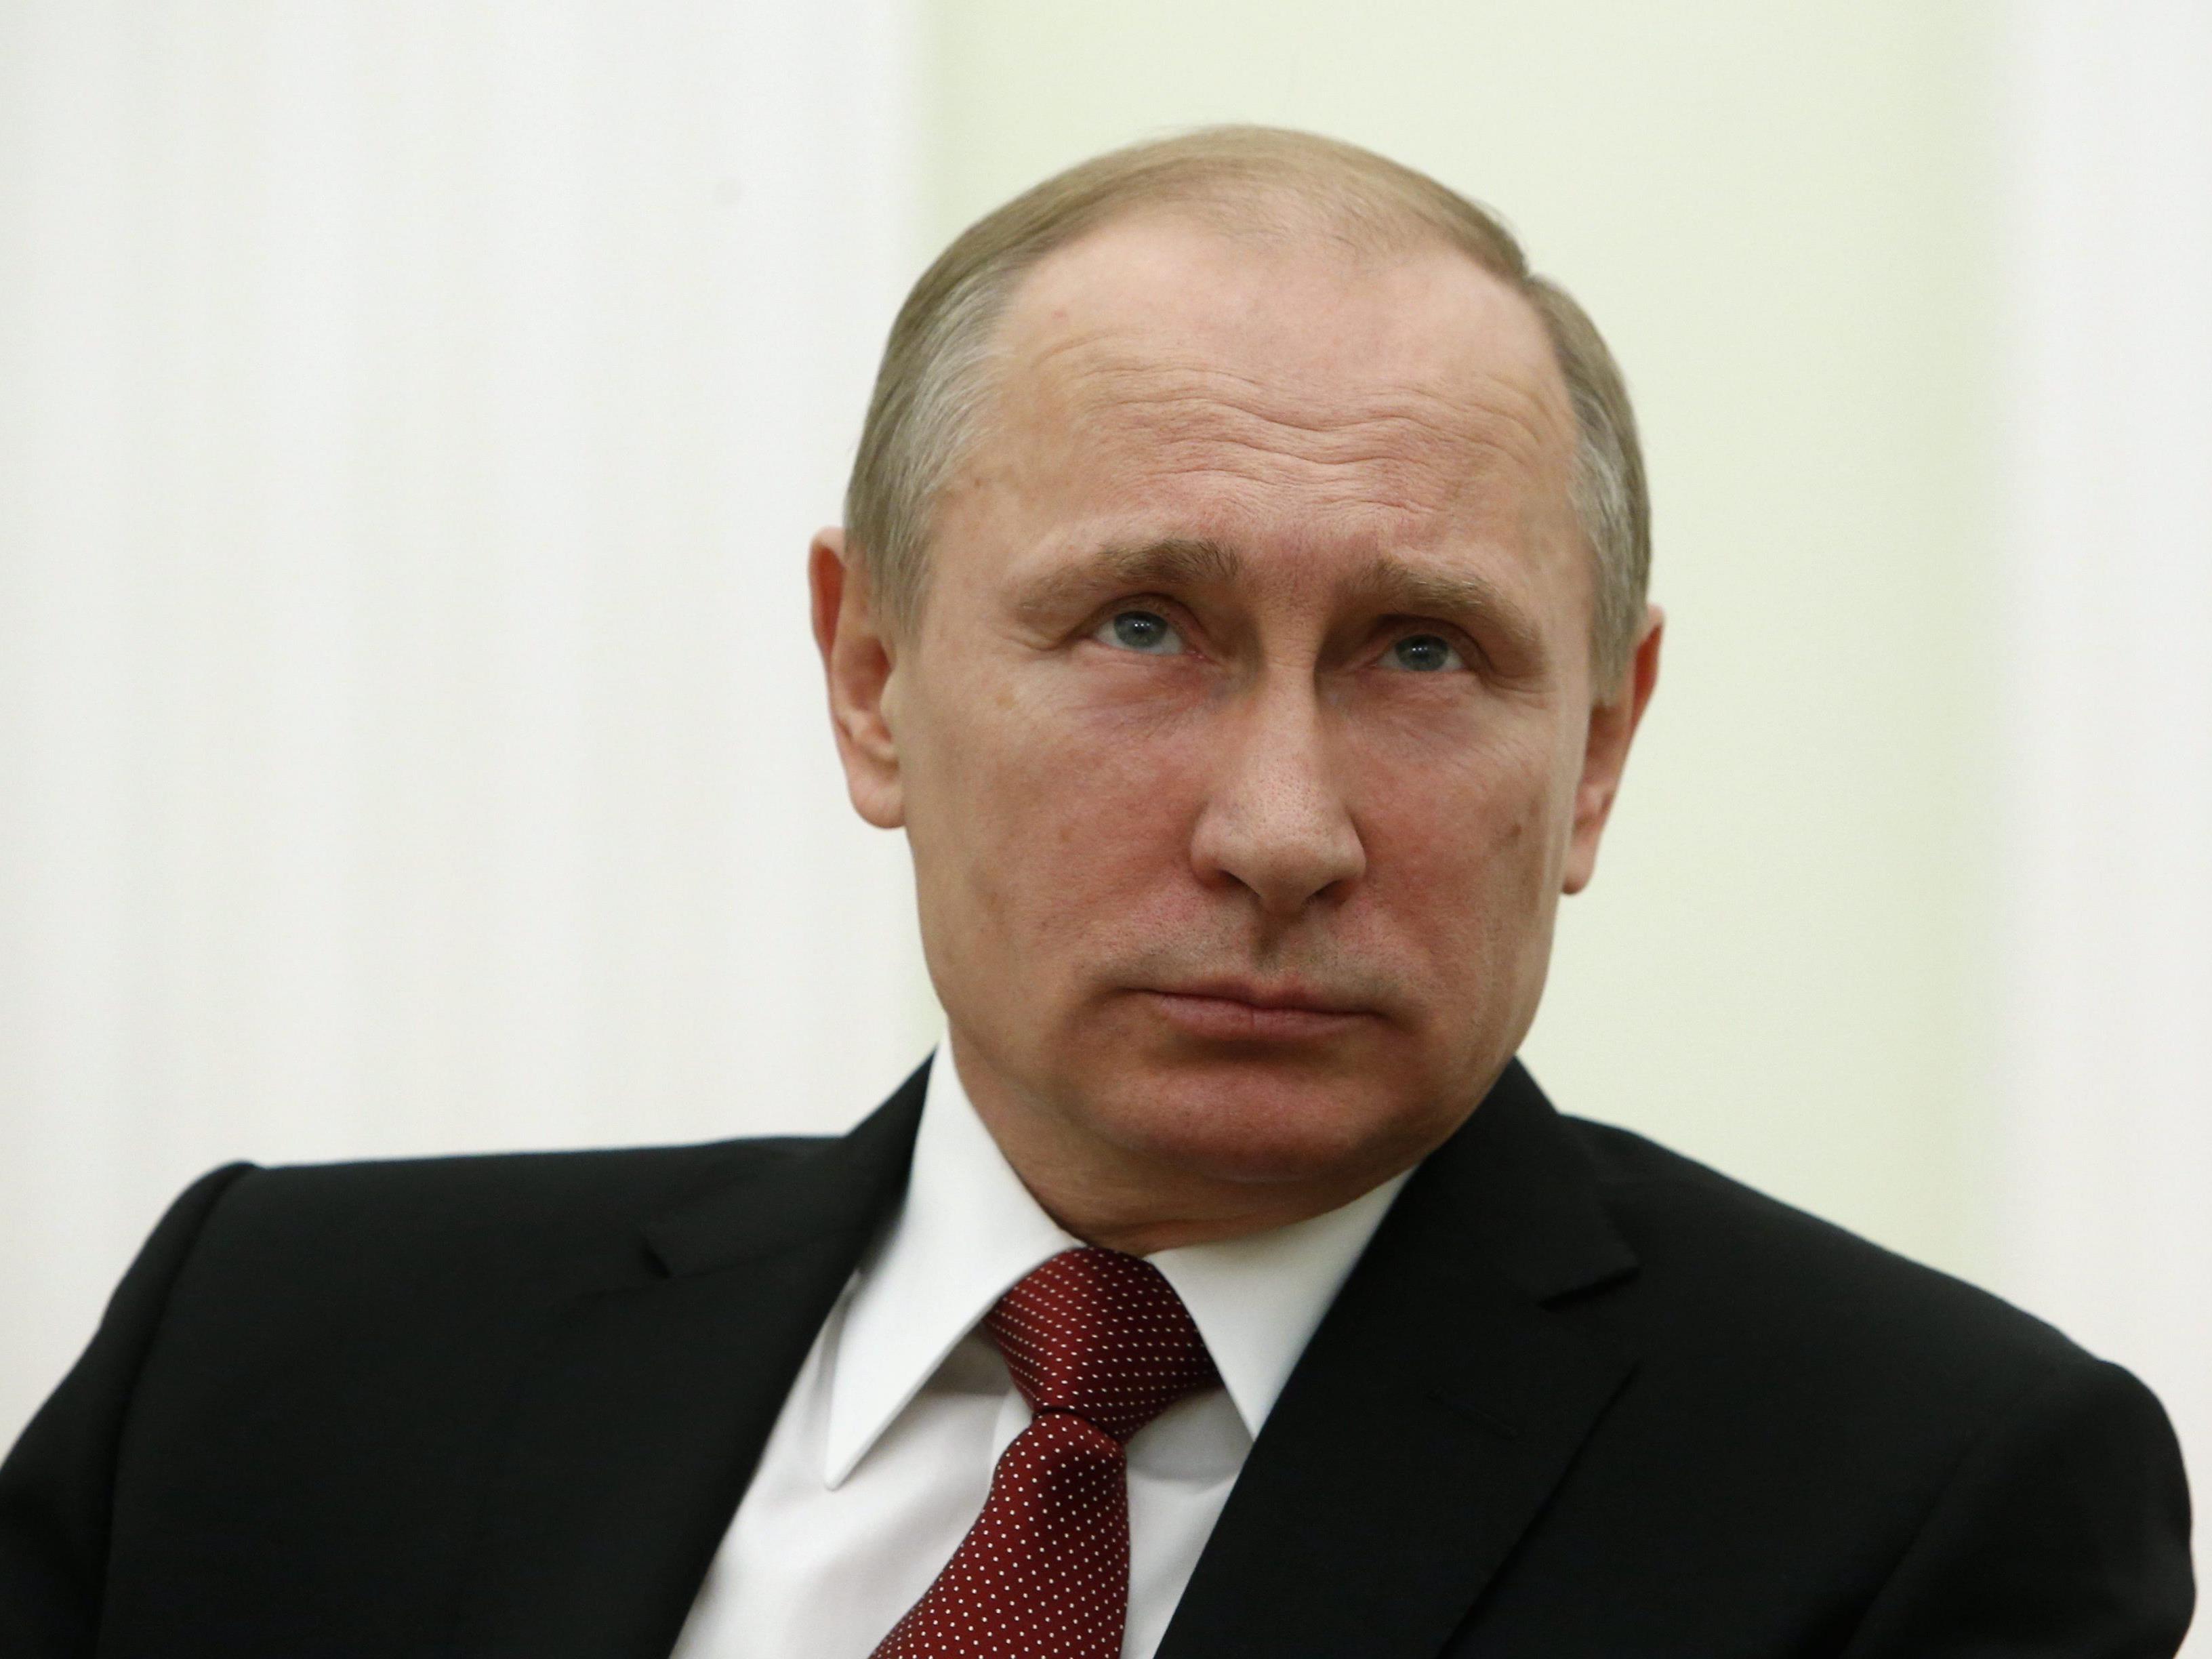 Wirbel um Putin - Russen sorgen sich in Krisenzeiten um den Kremlchef